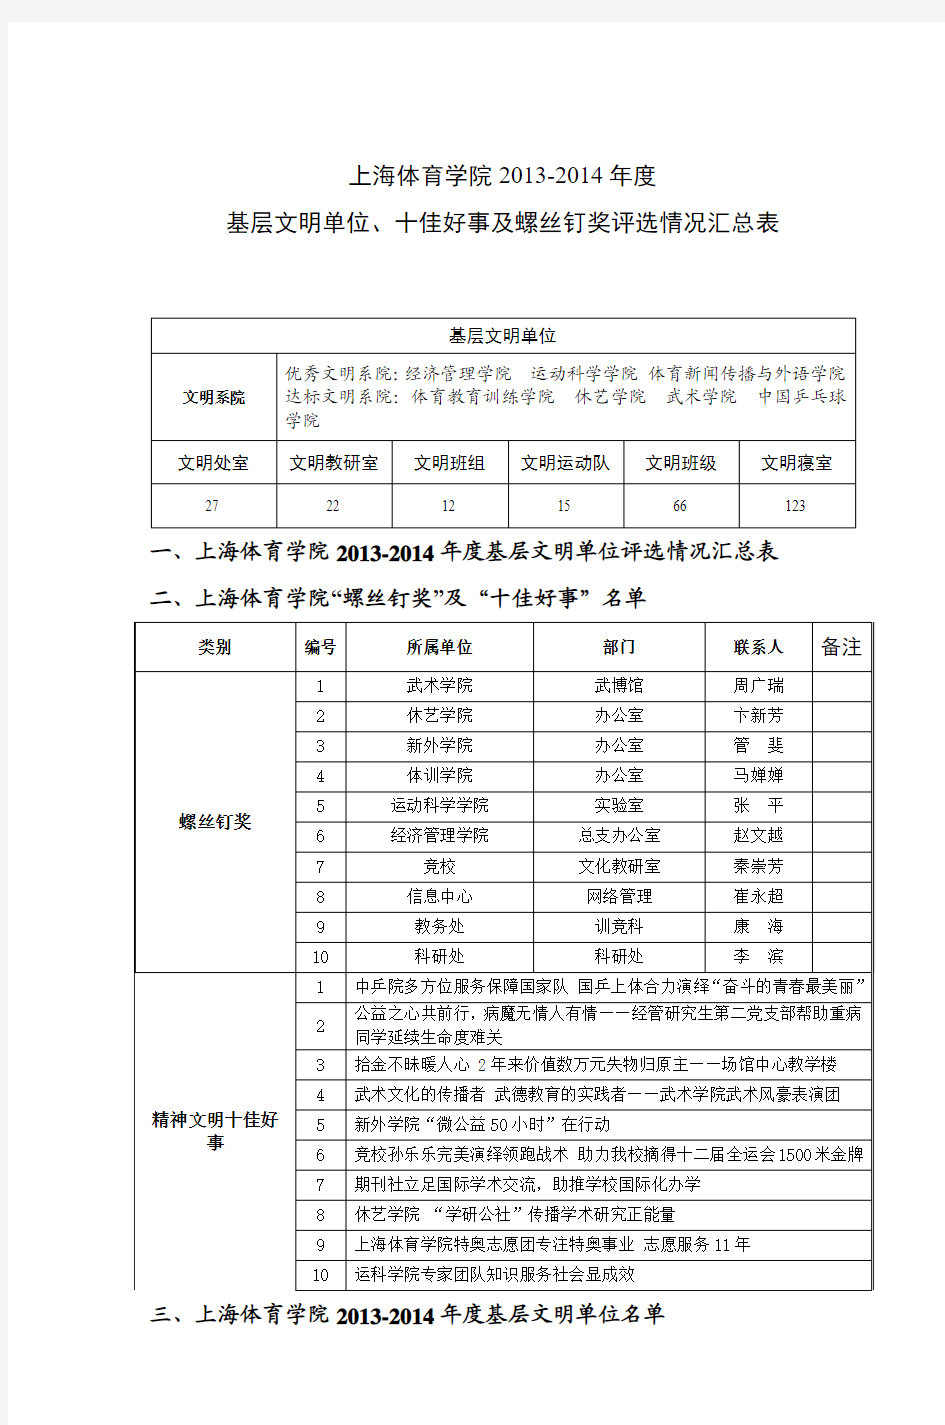 上海体育学院2013-2014年度